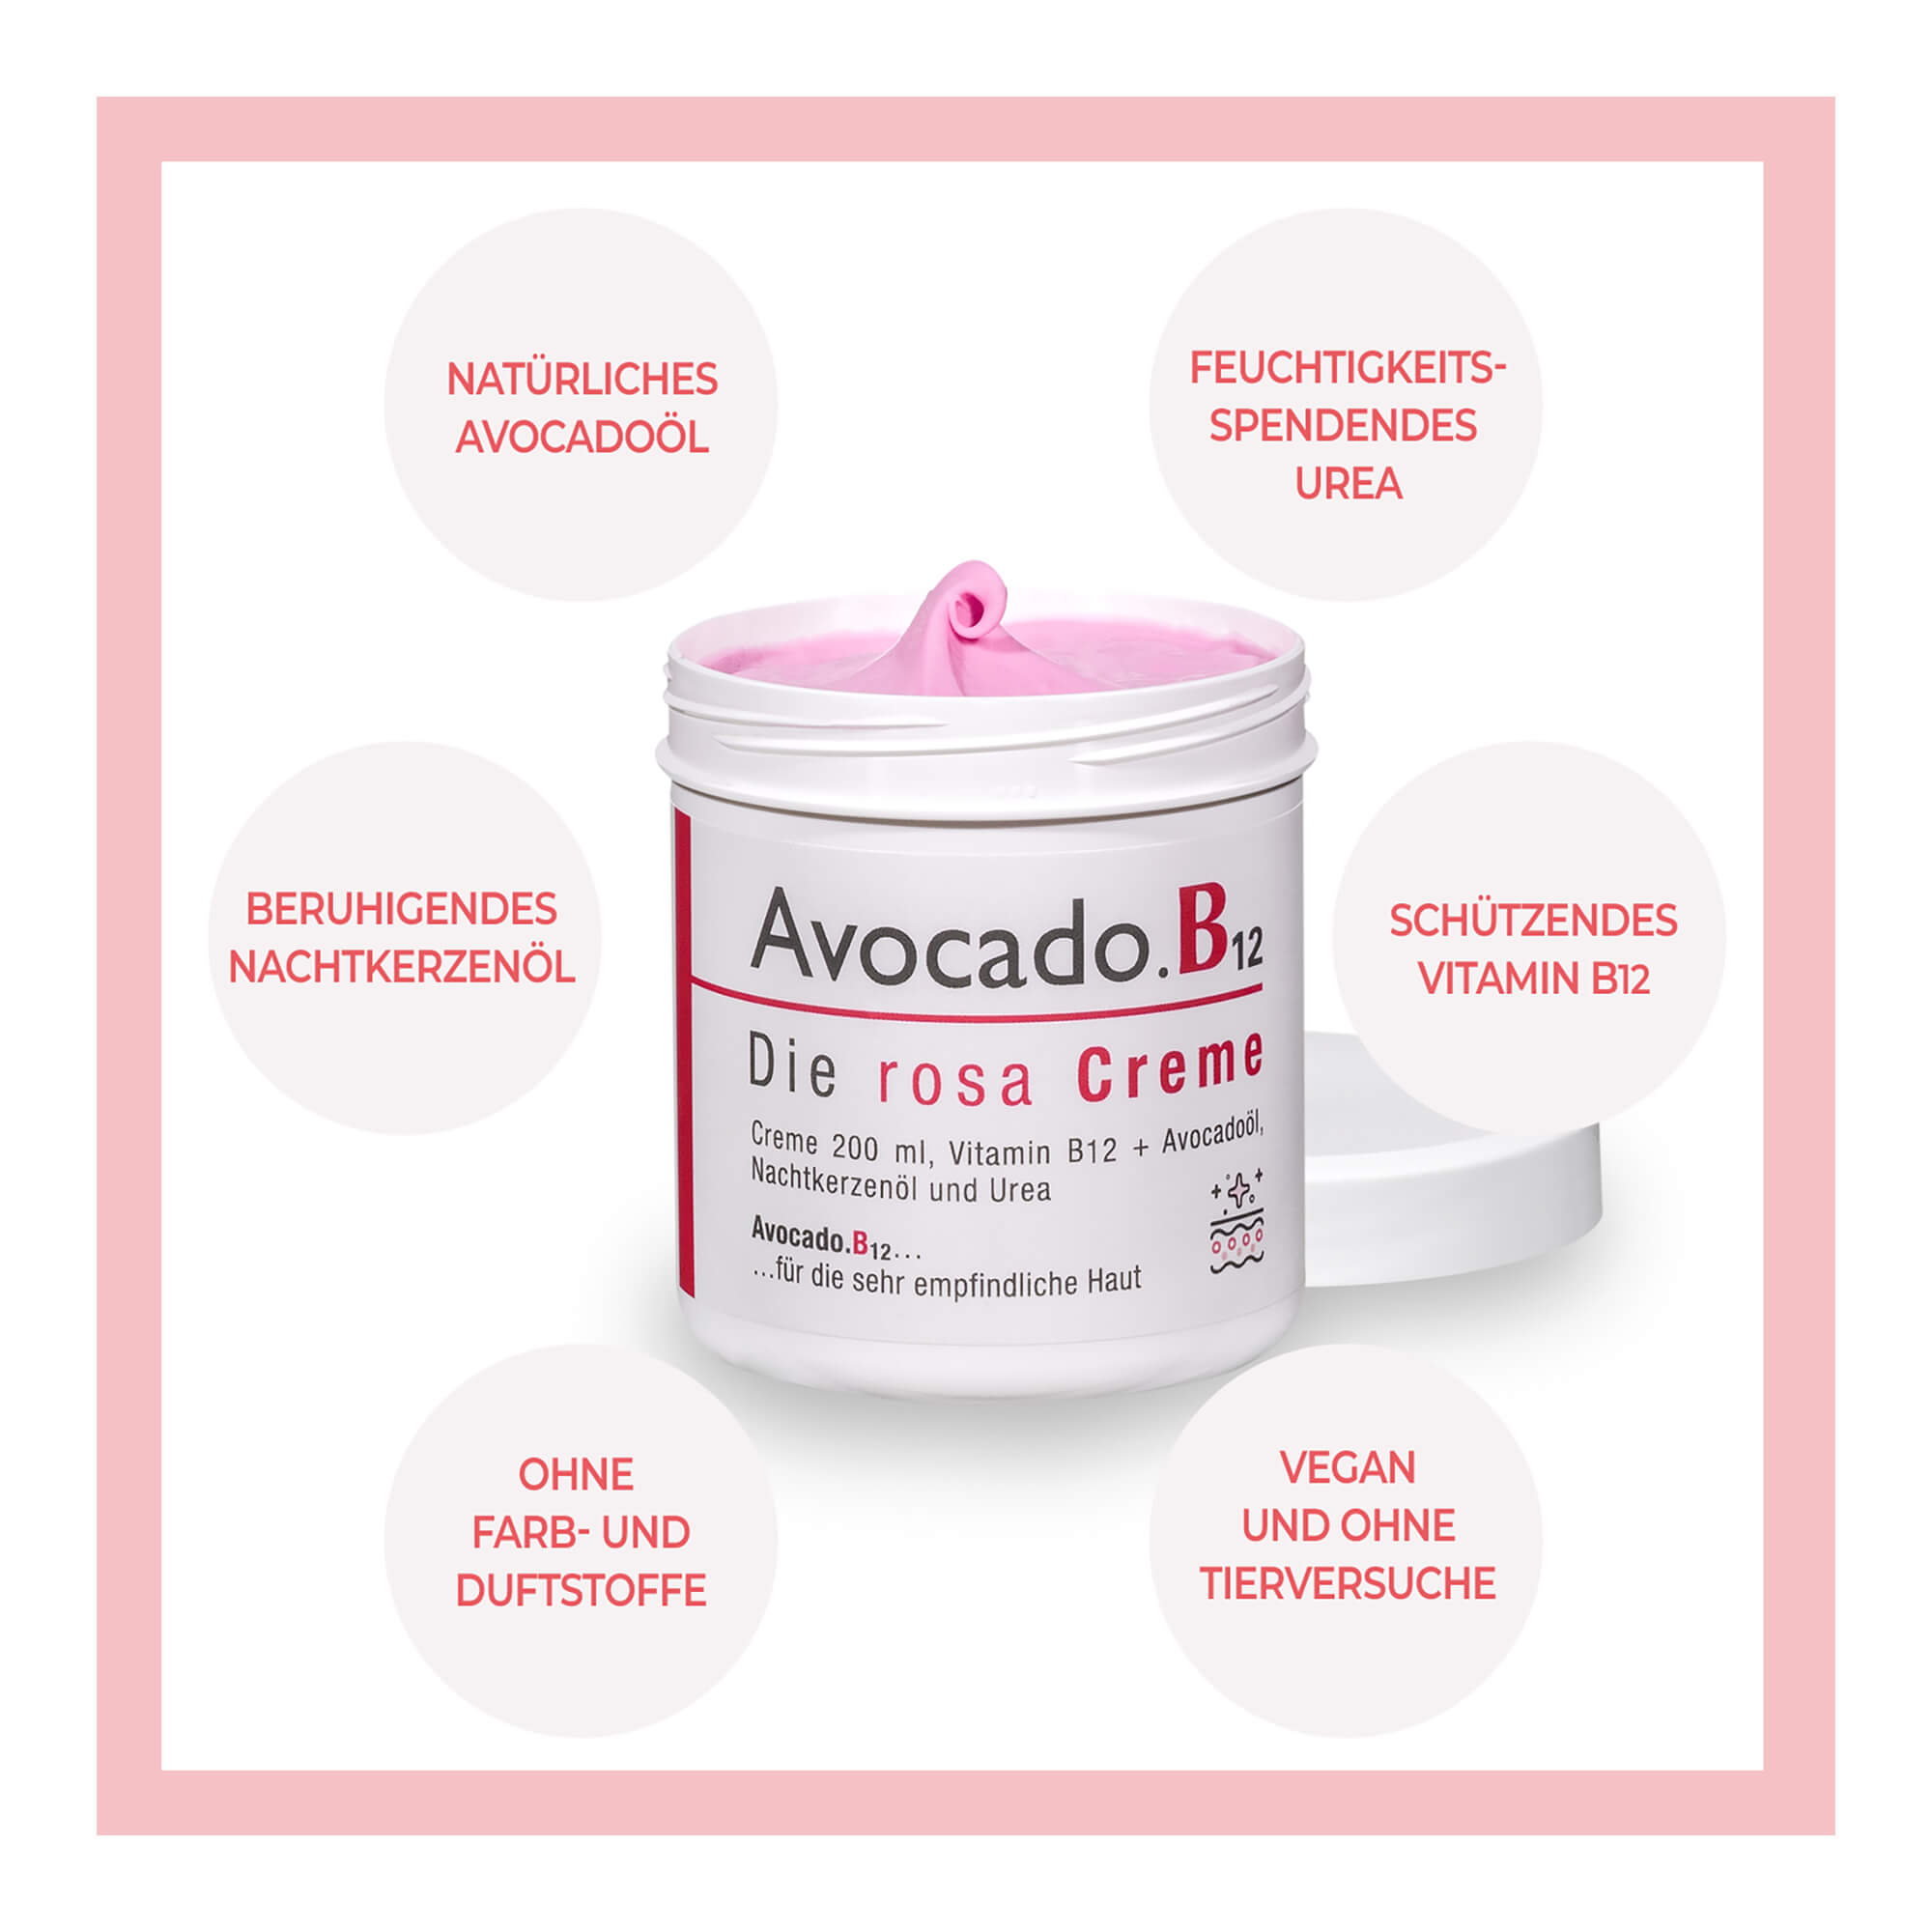 Avocado.B12 – die rosa Creme Eigenschaften